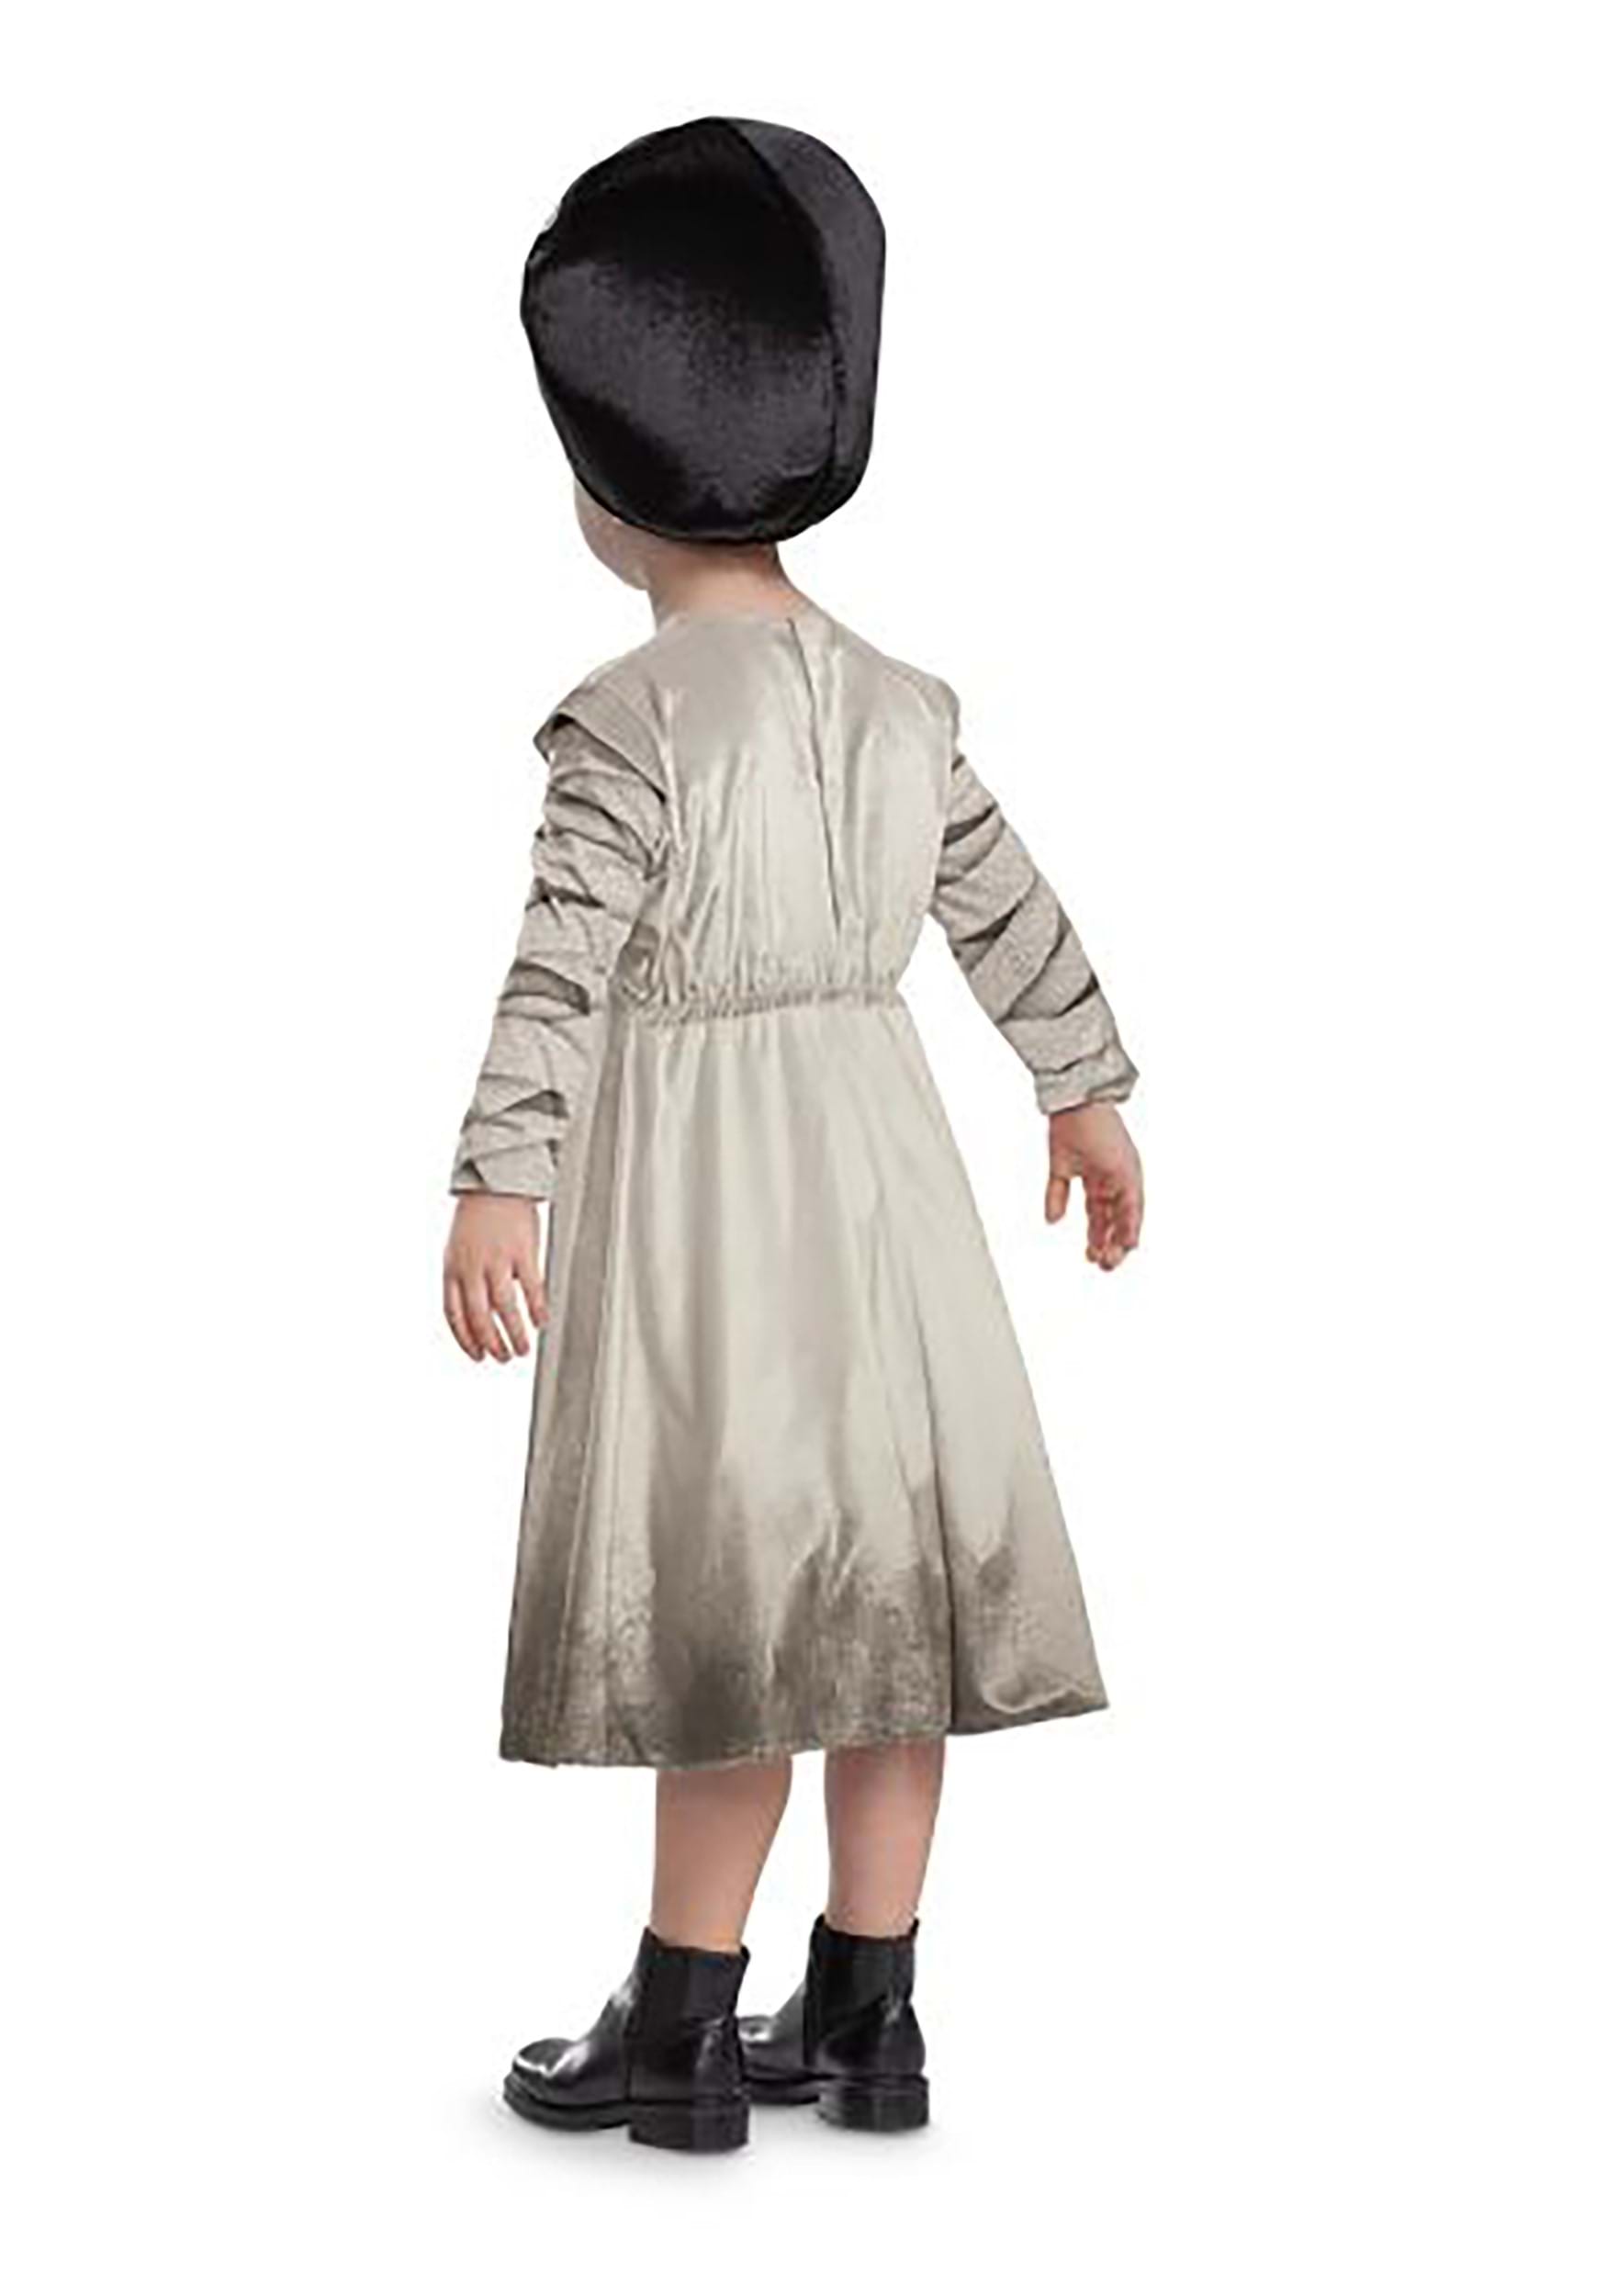 https://images.halloweencostumes.com/products/82892/2-1-222381/monsters-infant-toddler-bride-of-frankenstein-costume-alt-1.jpg